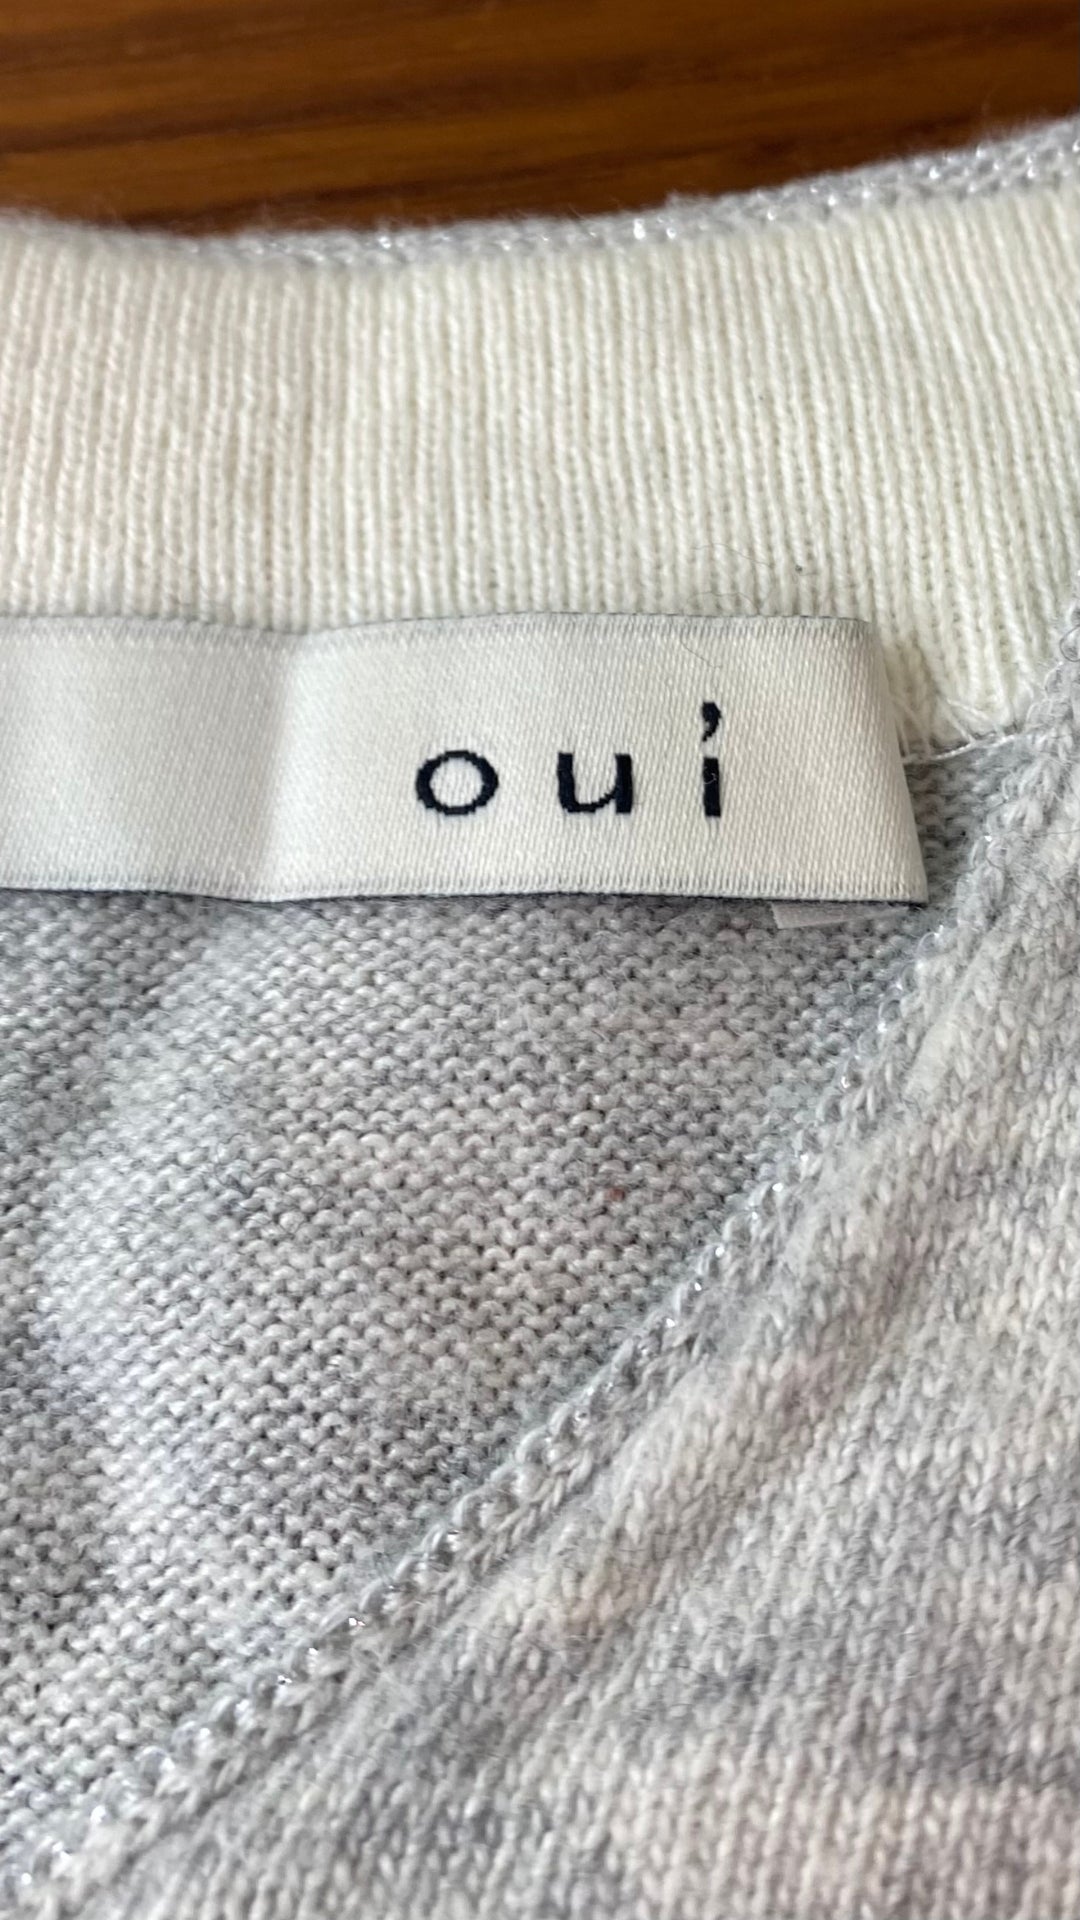 Chandail long en tricot doux gris beige Oui, taille 10 (environ medium). Vue de l'étiquette de marque.